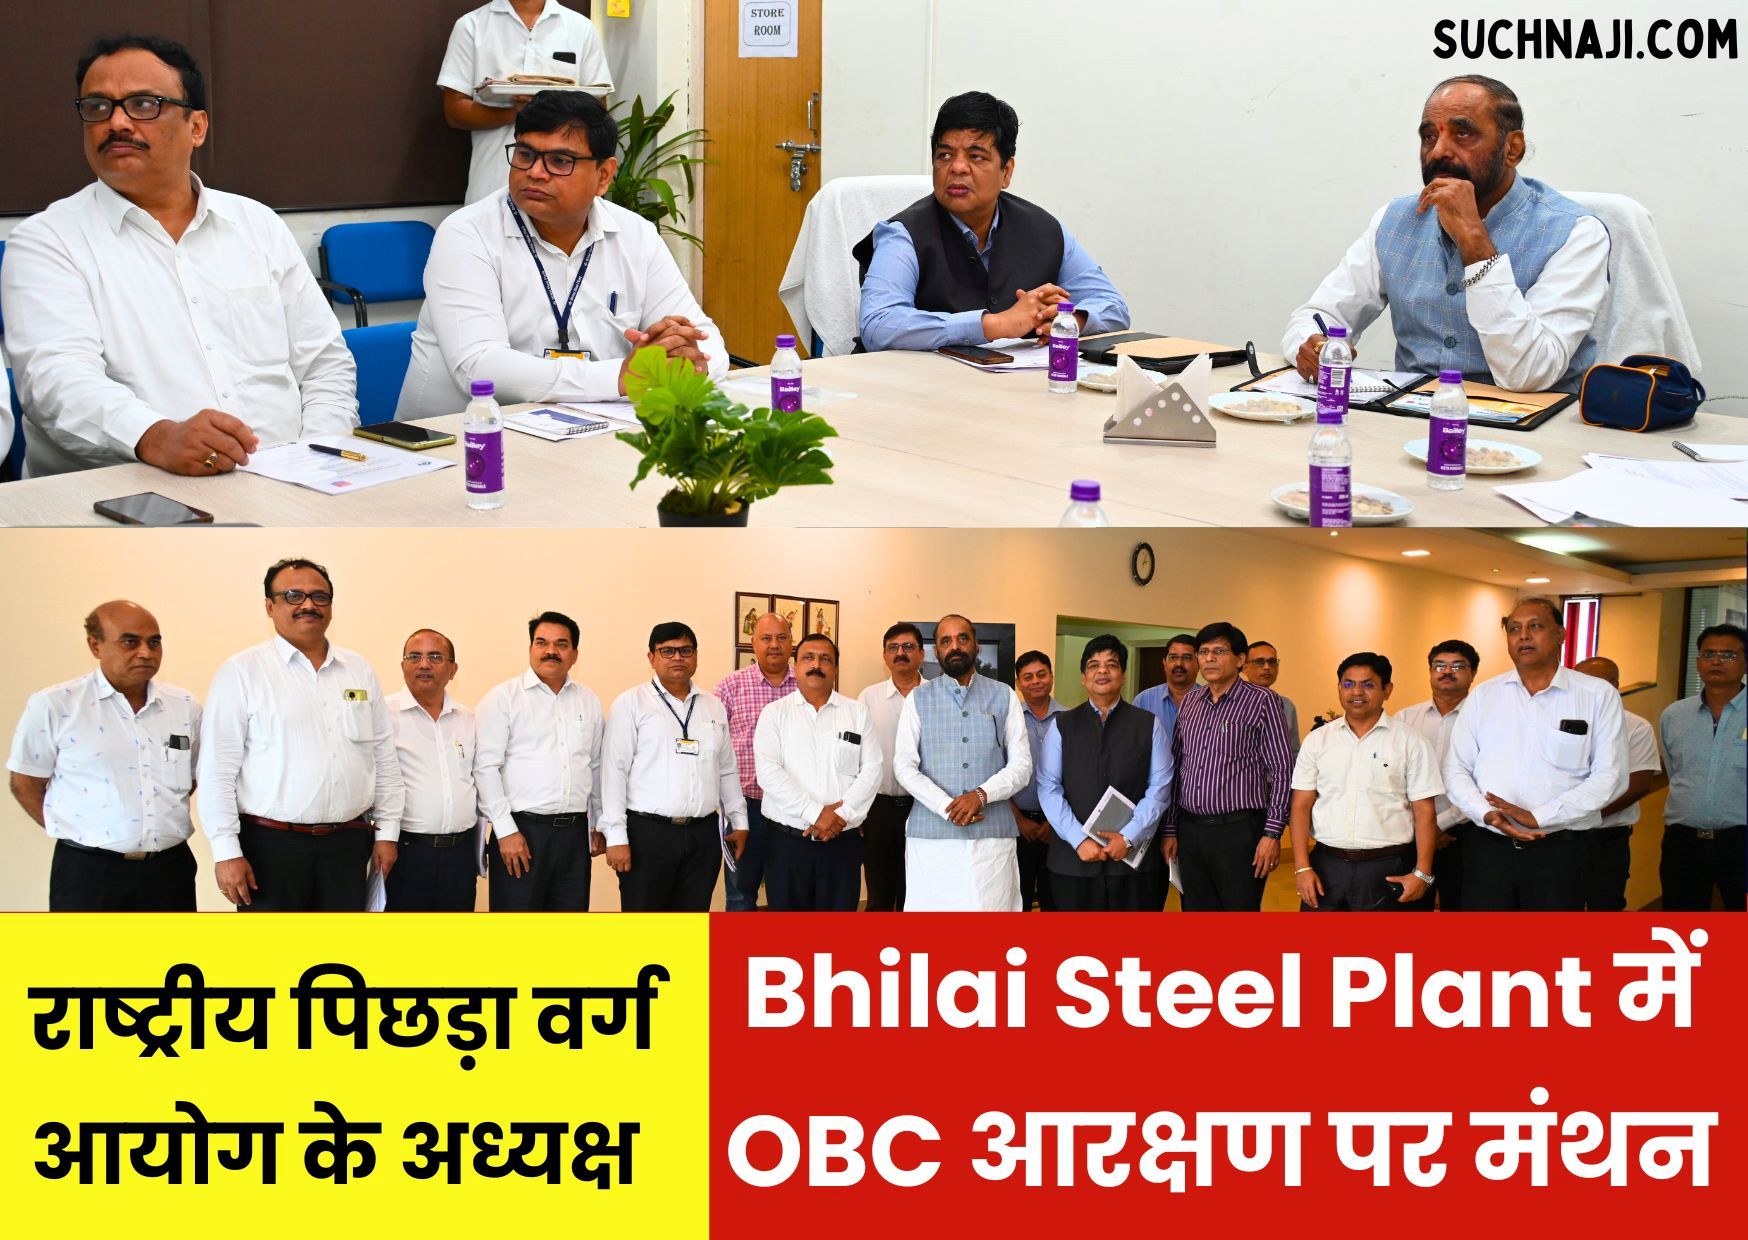 राष्ट्रीय पिछड़ा वर्ग आयोग के अध्यक्ष पहुंचे Bhilai Steel Plant, OBC आरक्षण पर खुली फाइलें